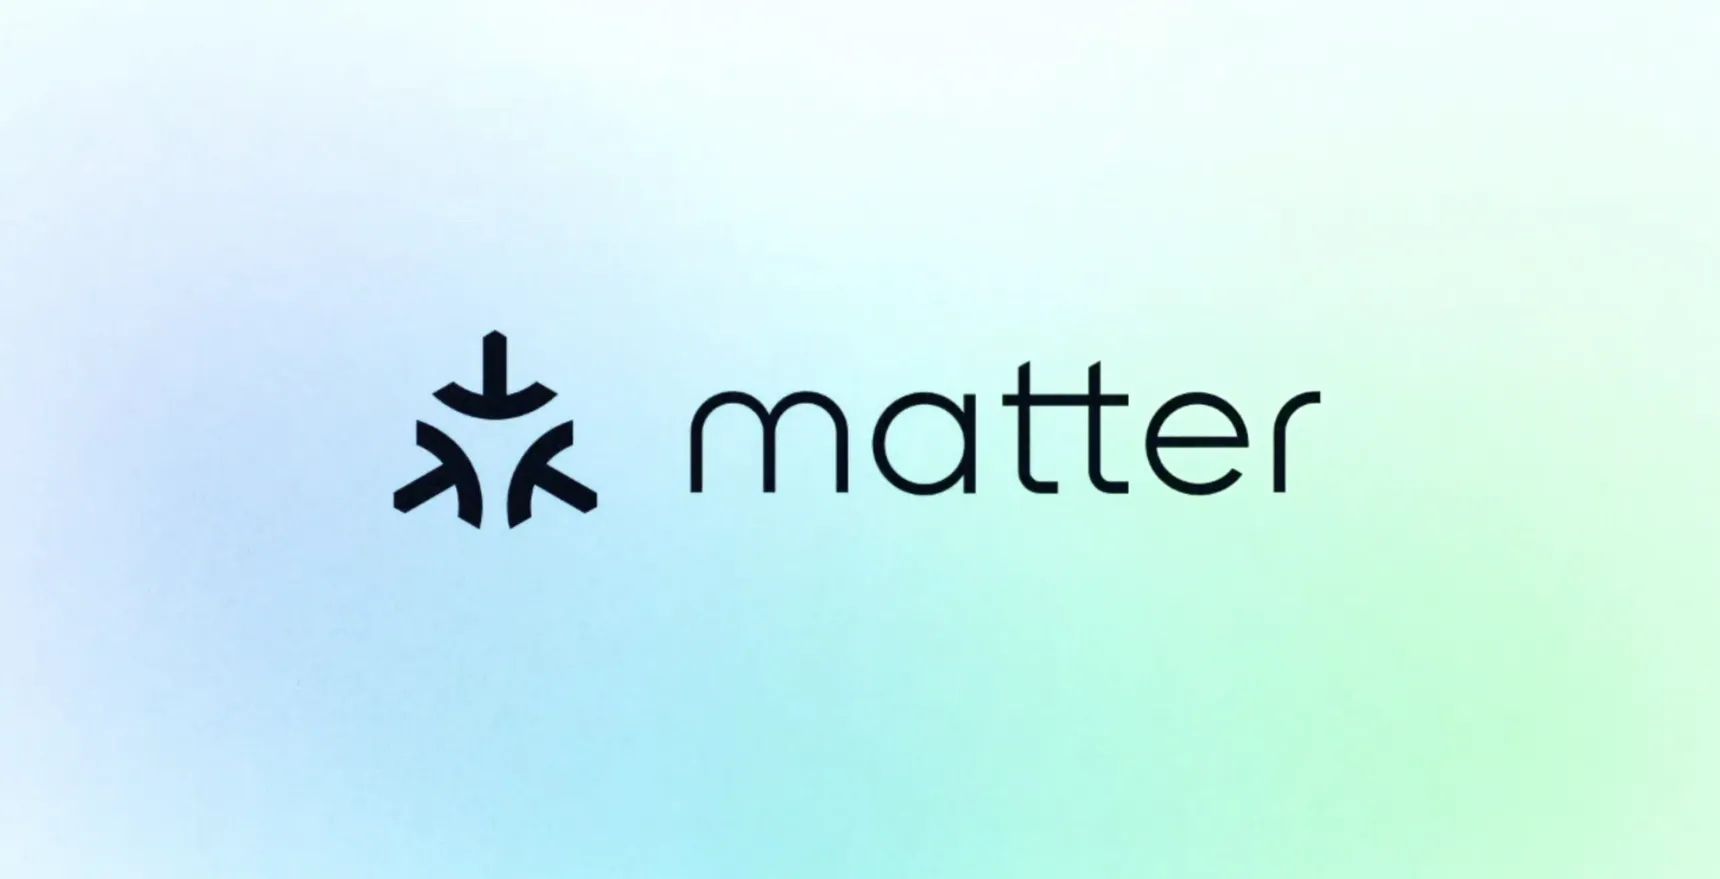 Спецификация Matter 1.3 добавляет отчеты об энергопотреблении, зарядку электромобилей, поддержку управления водными ресурсами и многое другое.